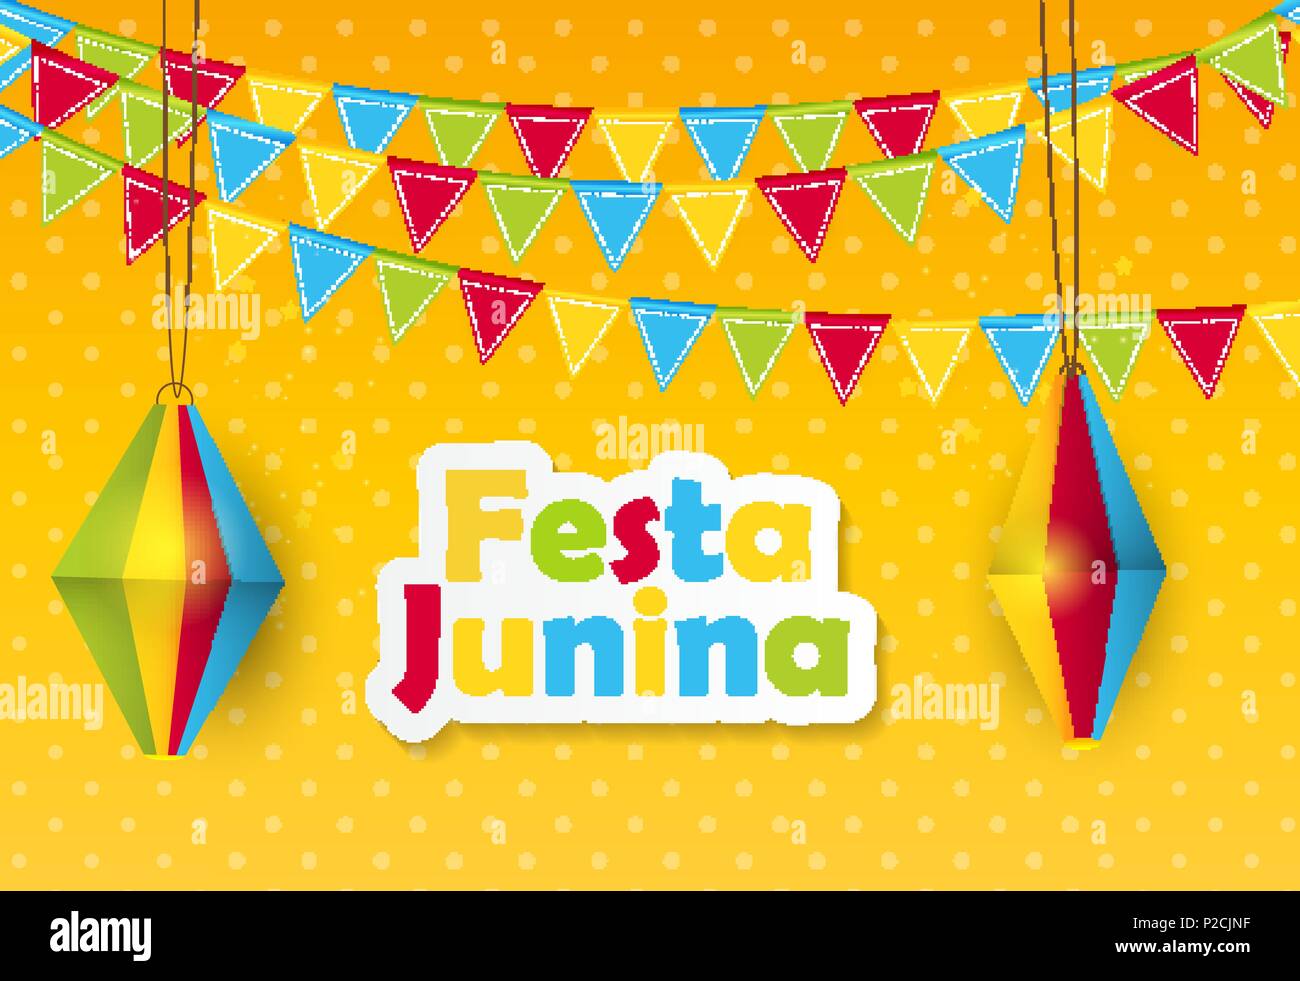 Festa Junina Background. Brazil June Festival Design for Greeting Card. Vector Illustration Stock Vector